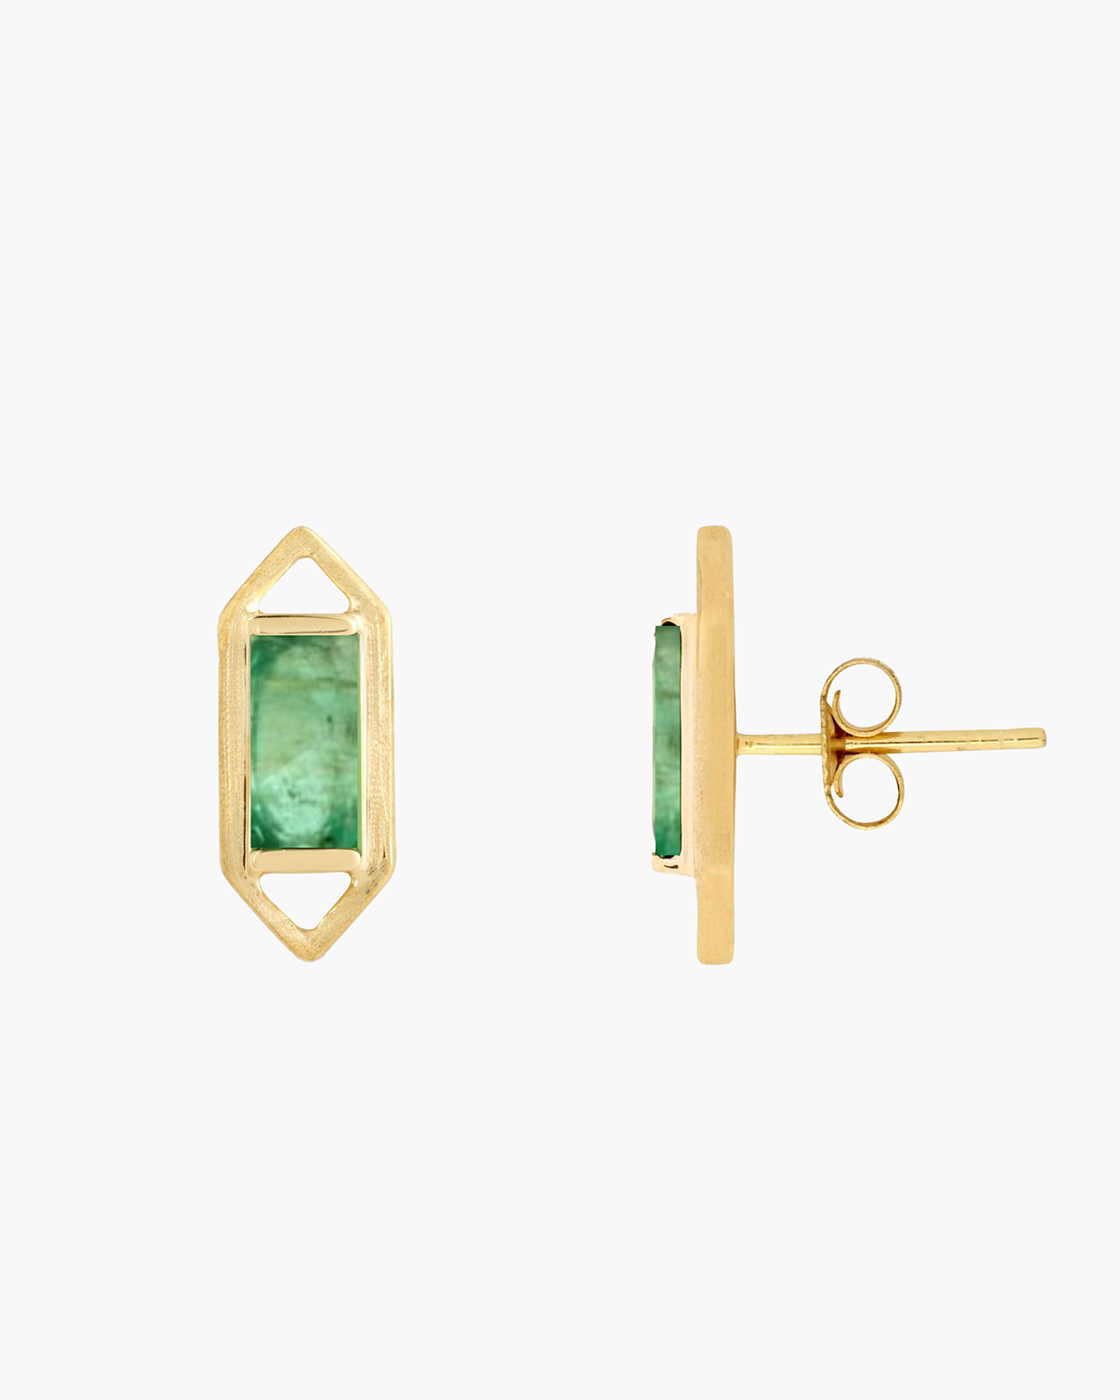 Modern Edge Baguette Zambian Emerald Geometric Stud Earrings